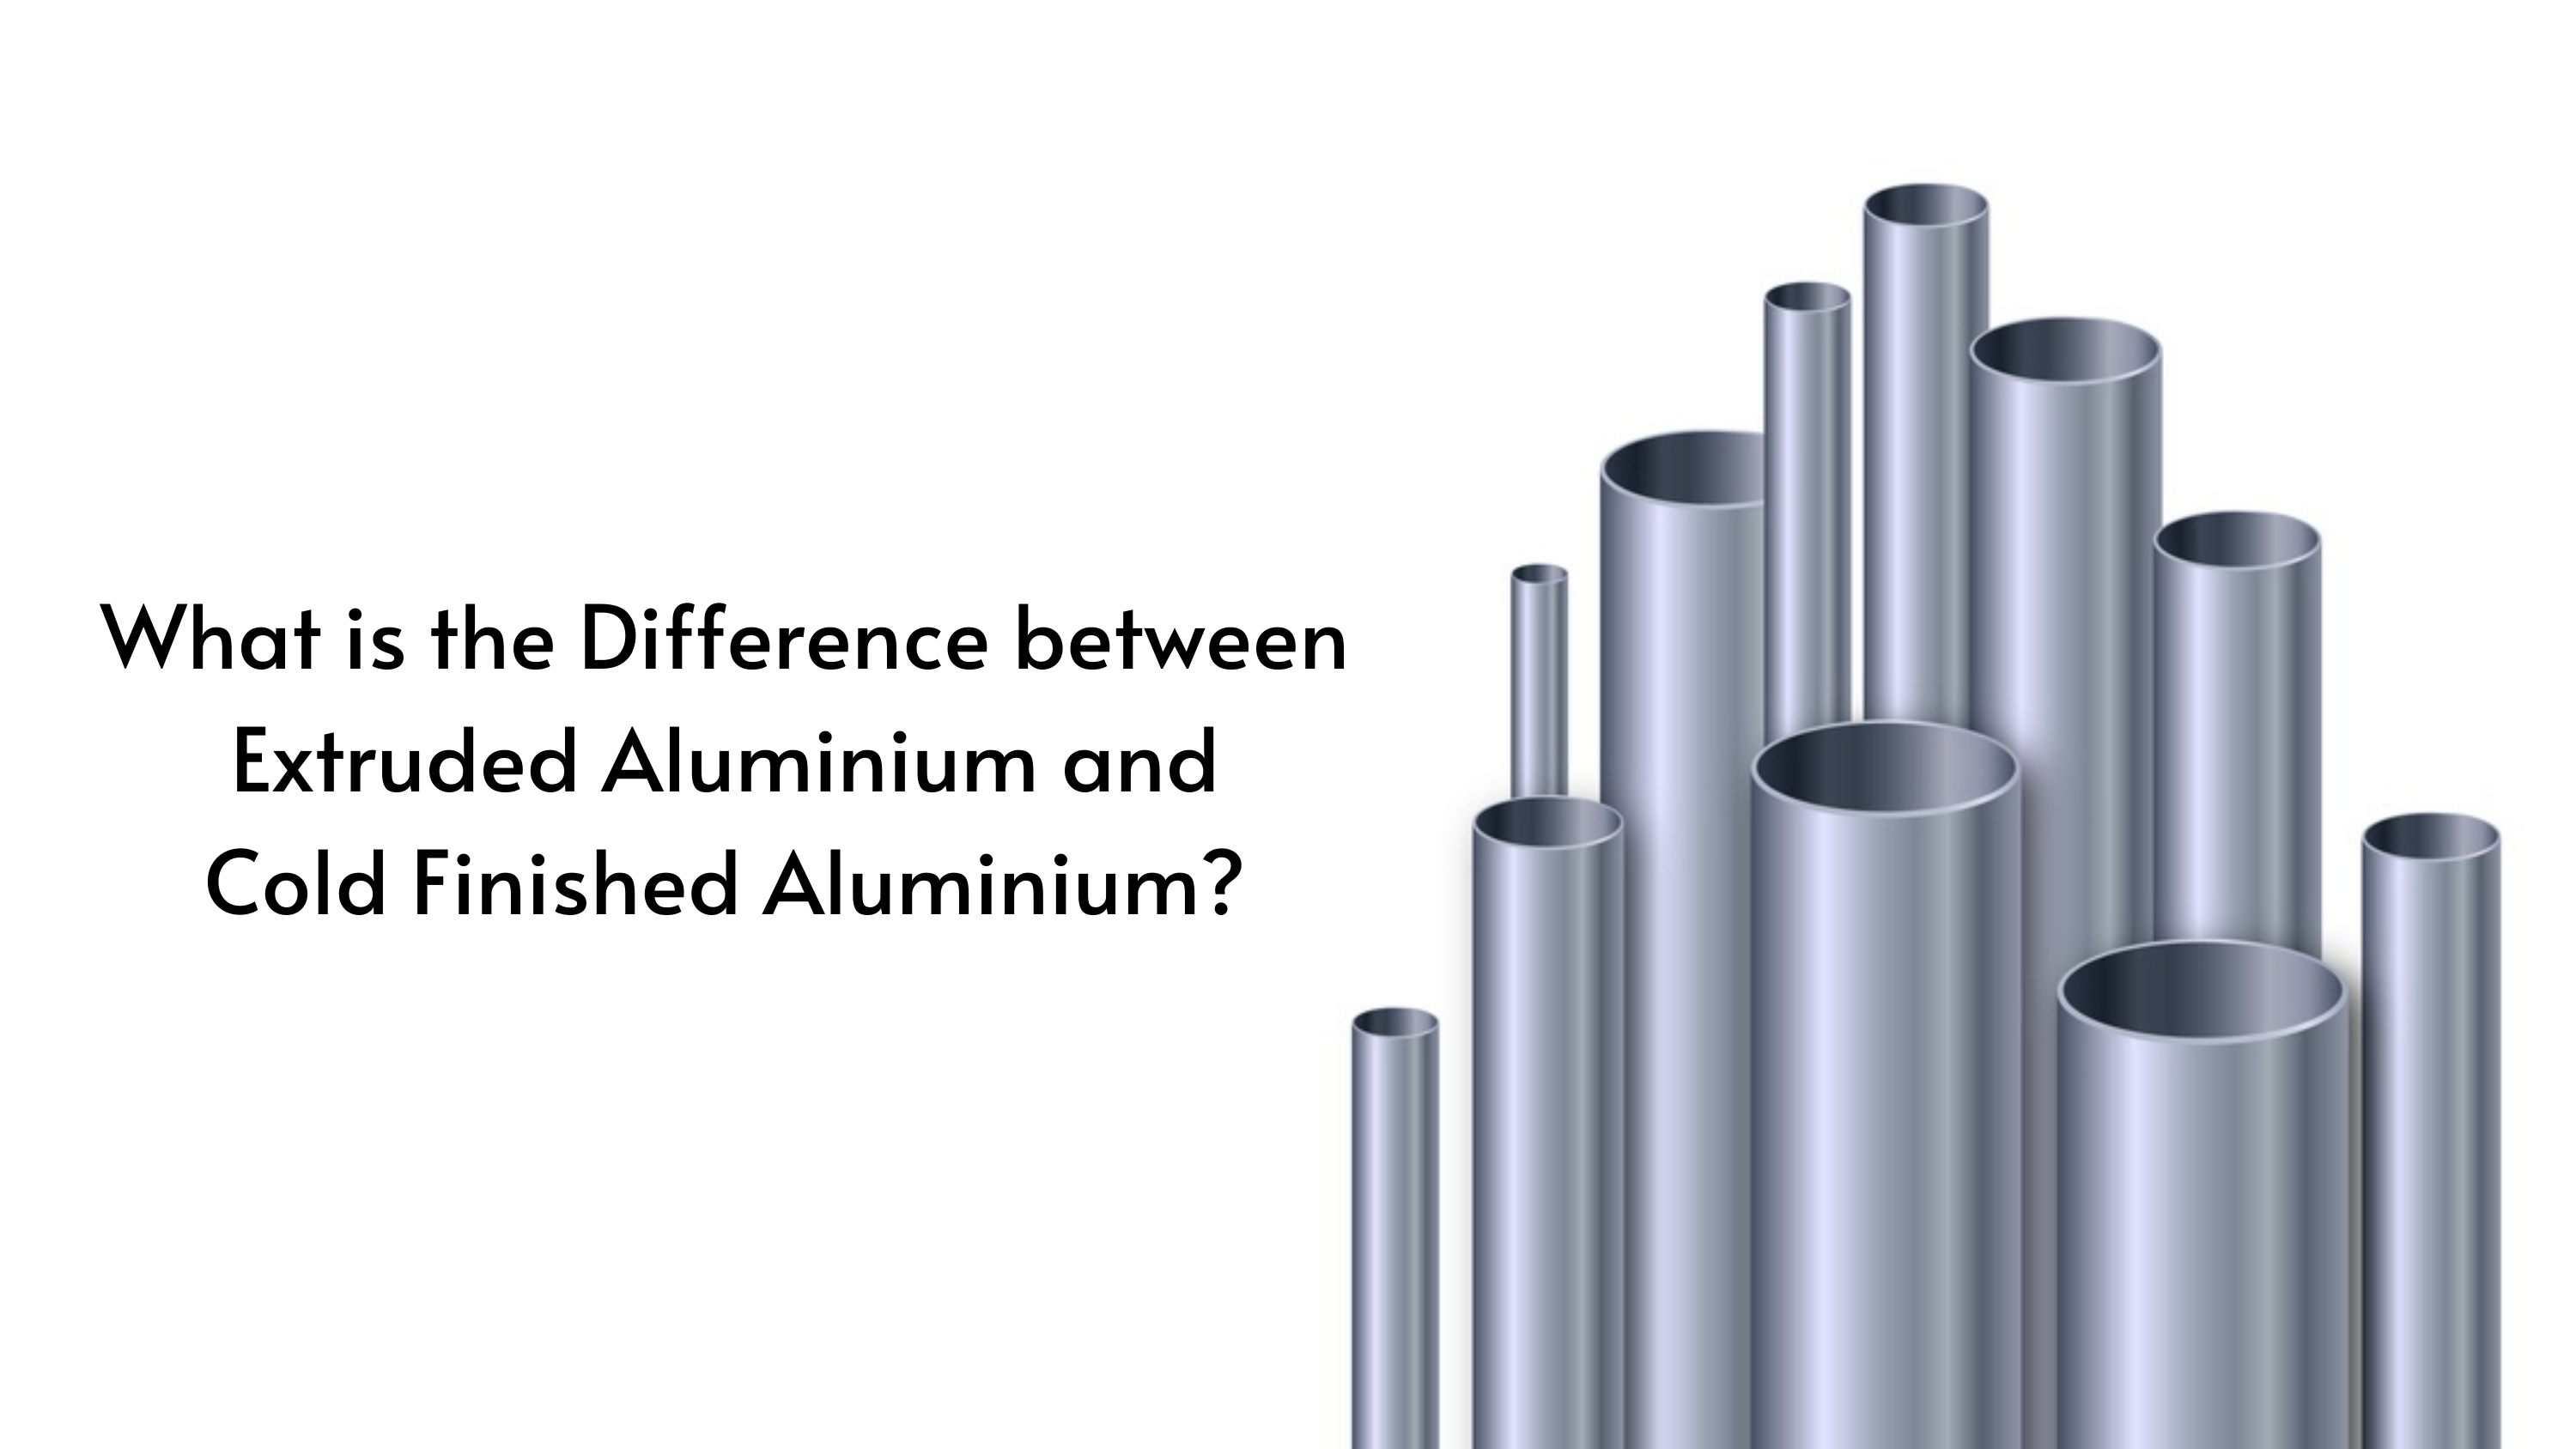 What are Aluminium Rolled Products? - KMC Aluminium